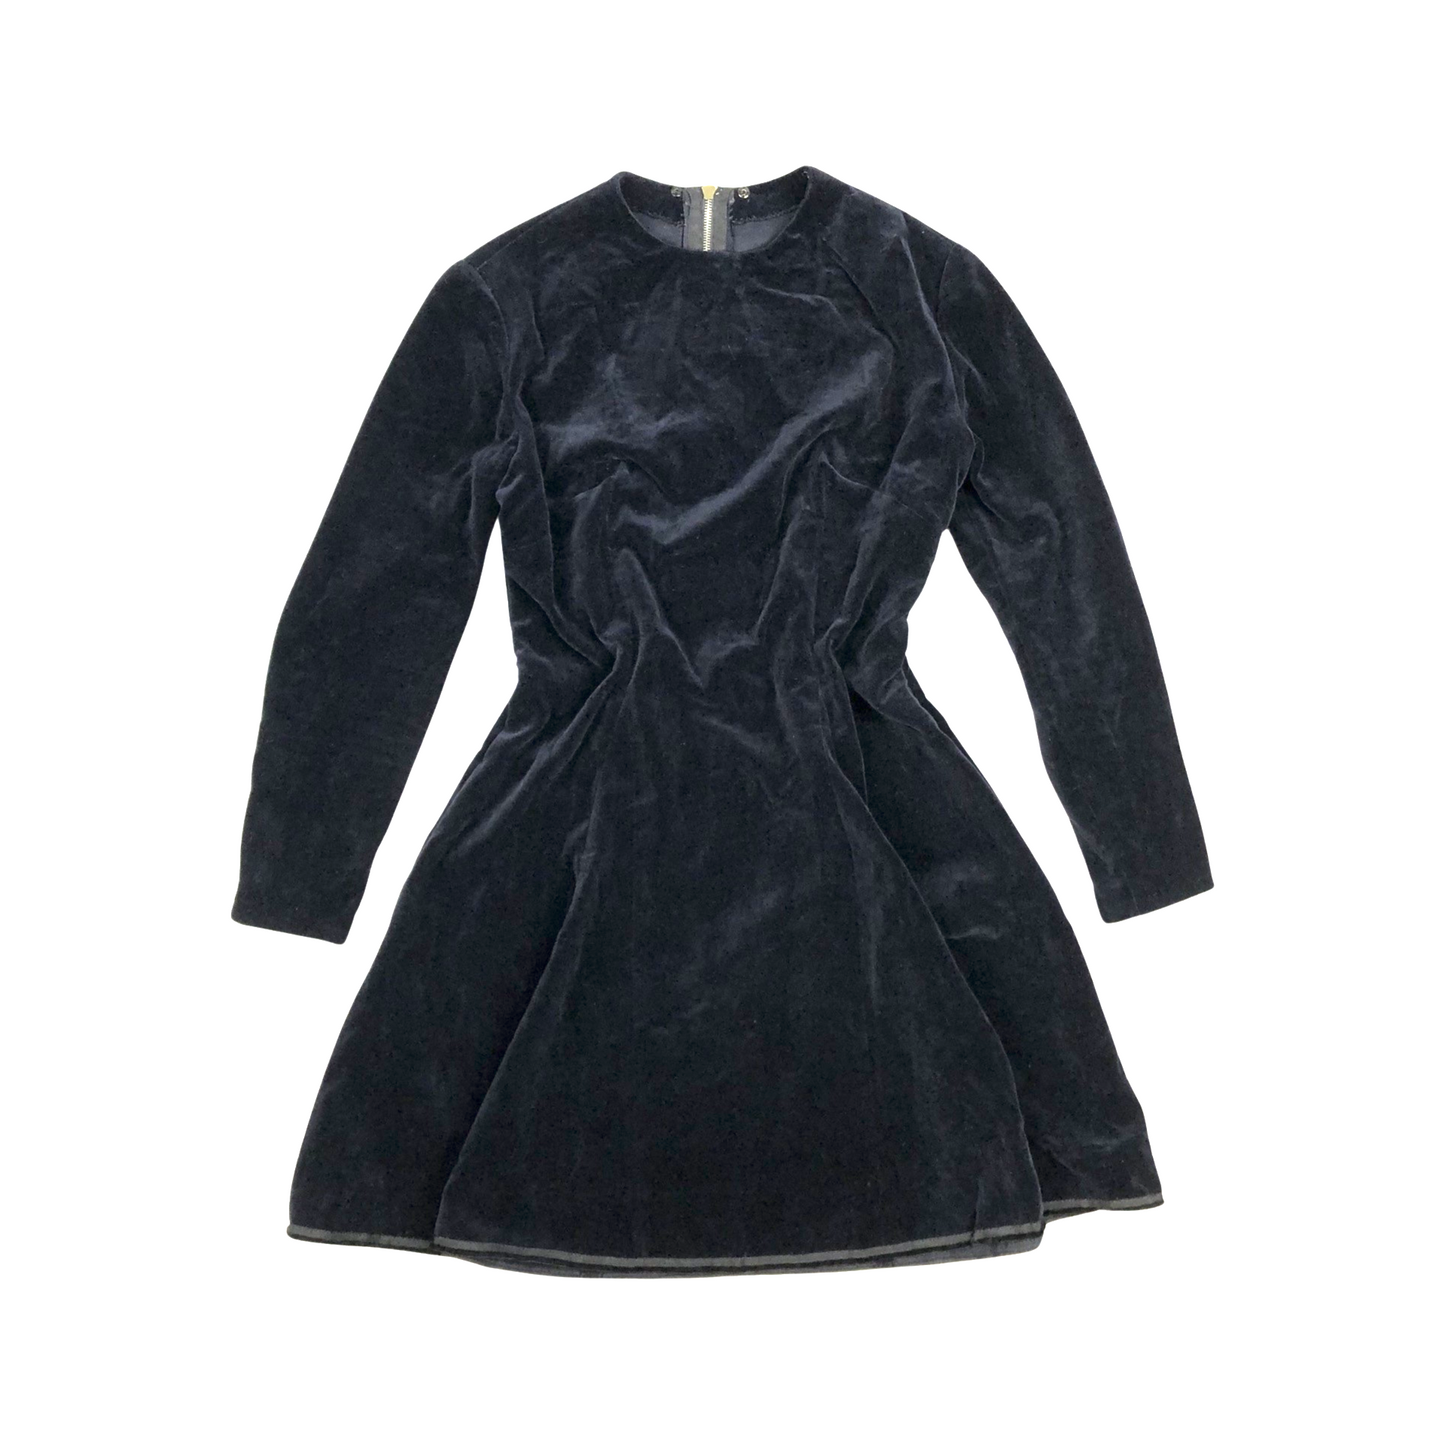 Vintage Black Velvet Long Sleeved Dress 8 10